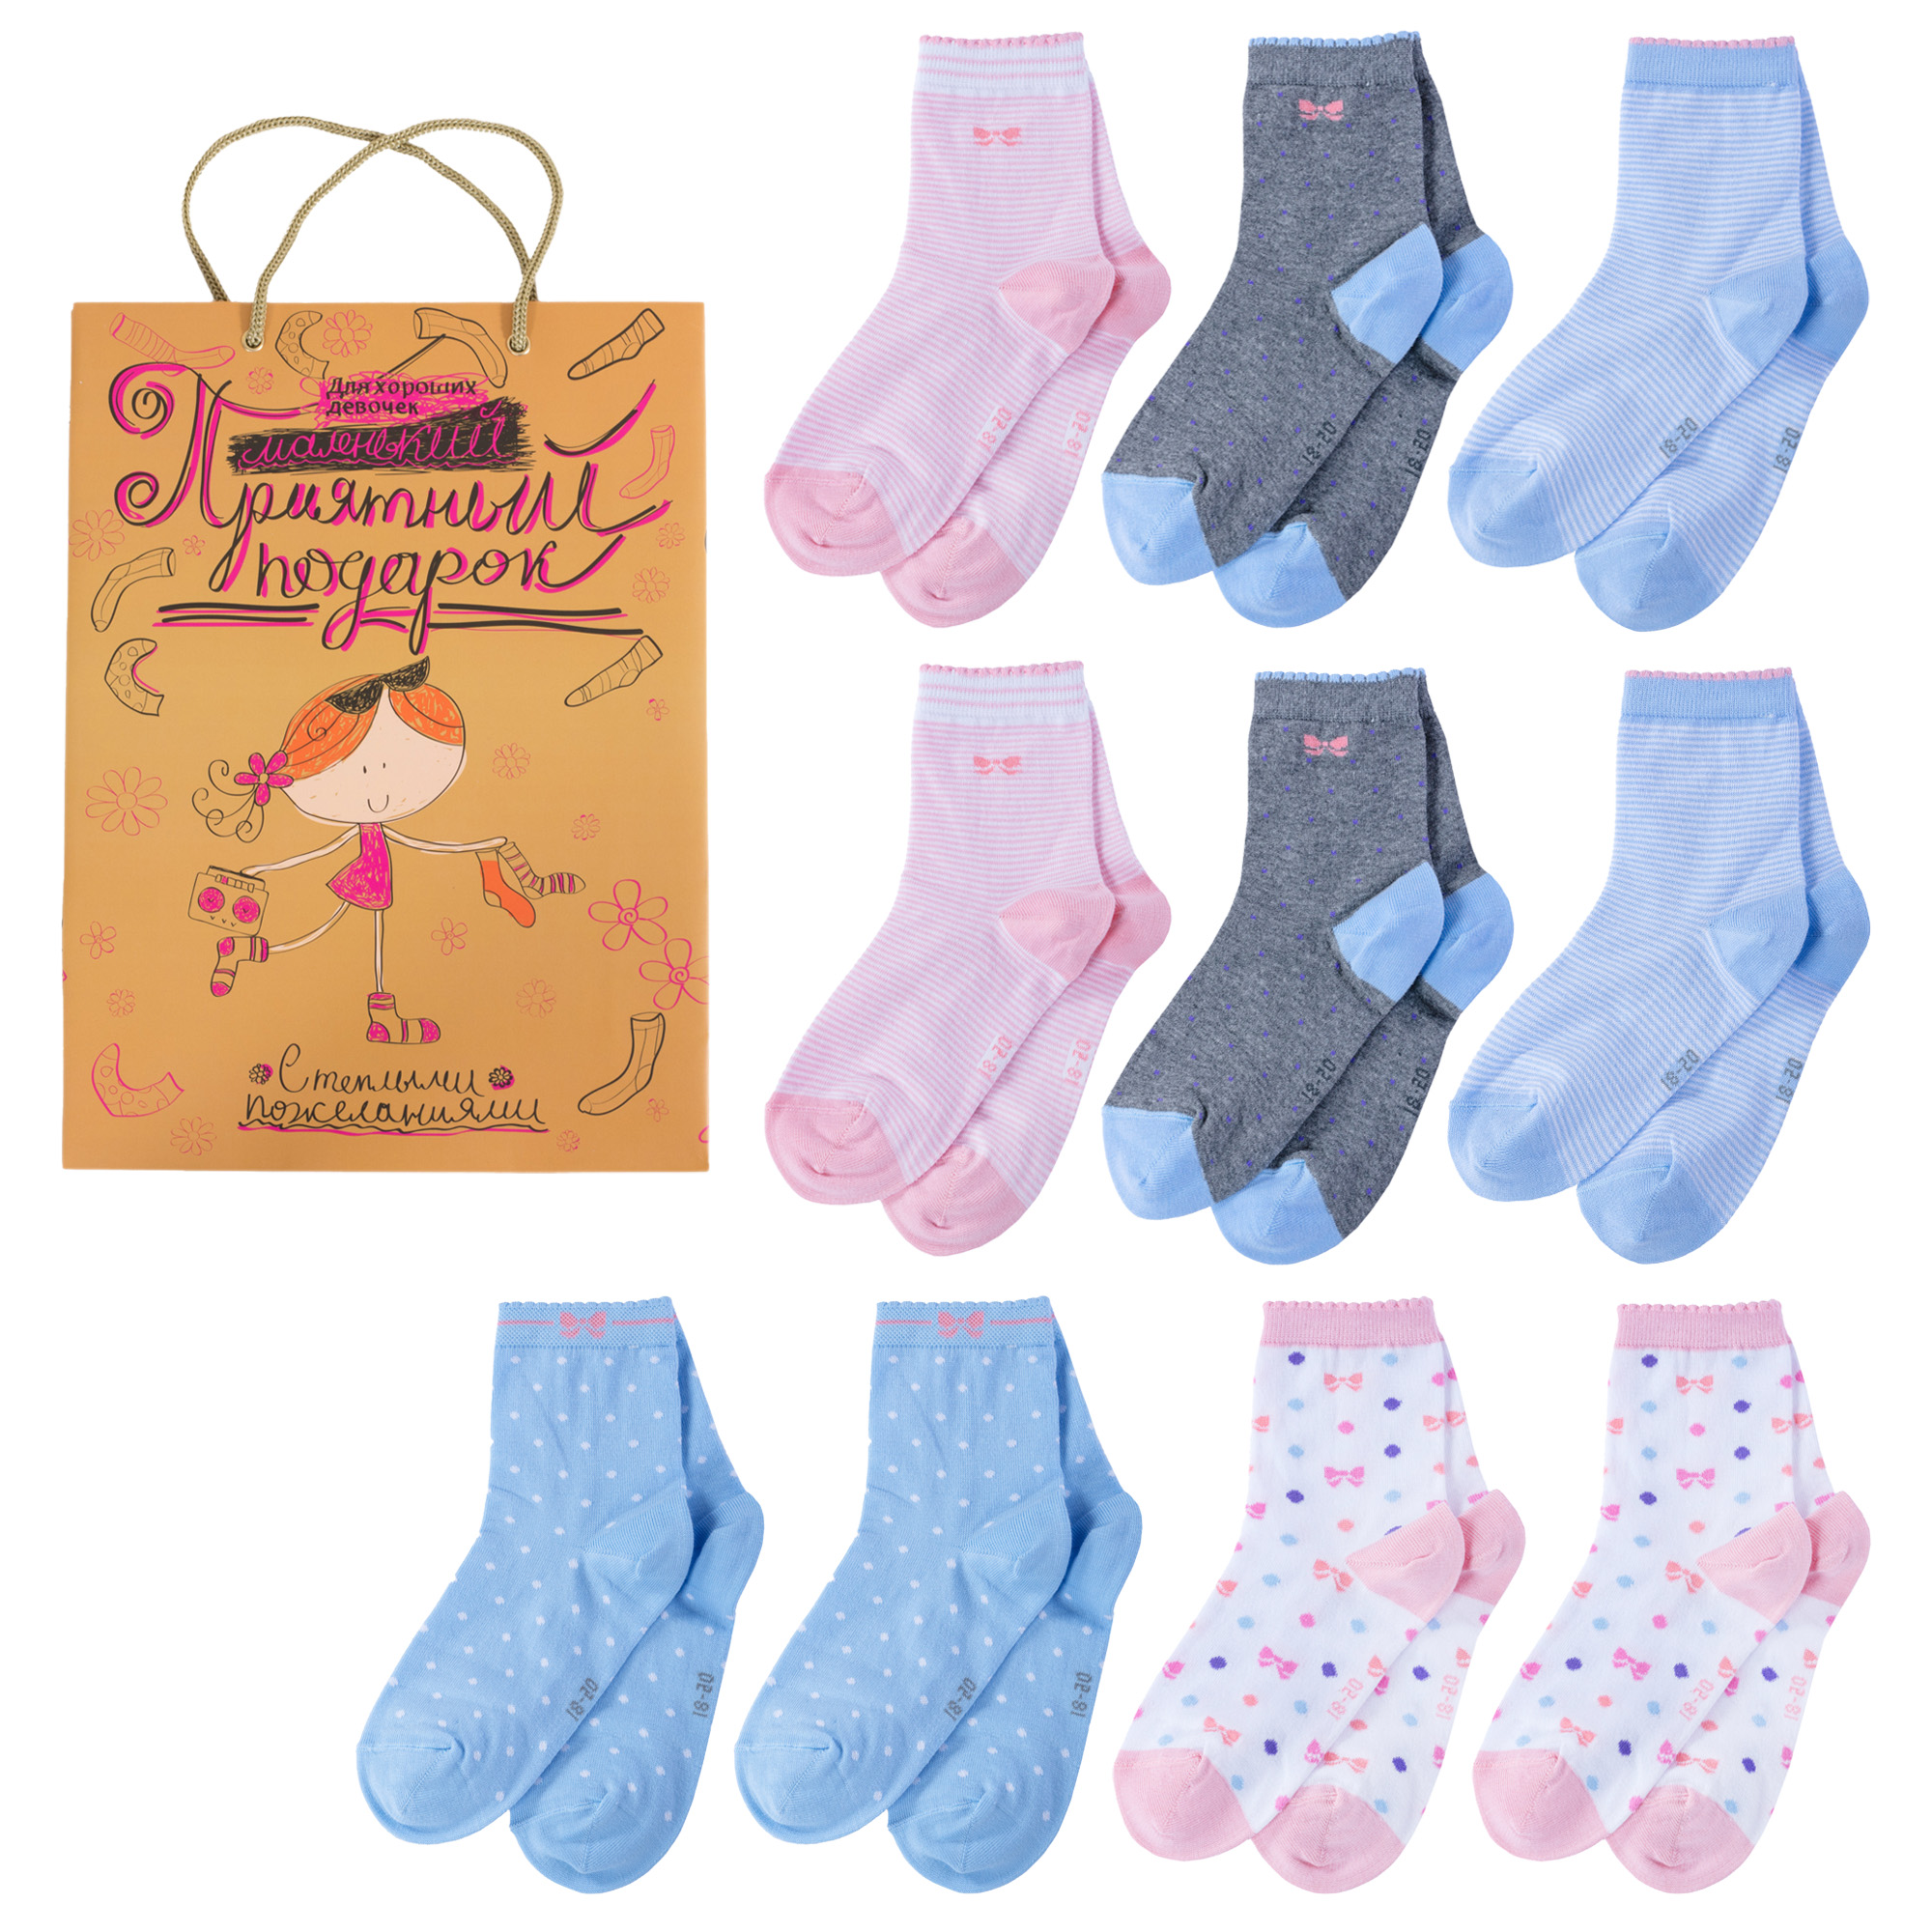 Носки для девочек LorenzLine Л105-10 цв. голубой; розовый; серый; белый р. 41974 носки для девочек lorenzline л105 10 цв голубой розовый серый белый р 44905